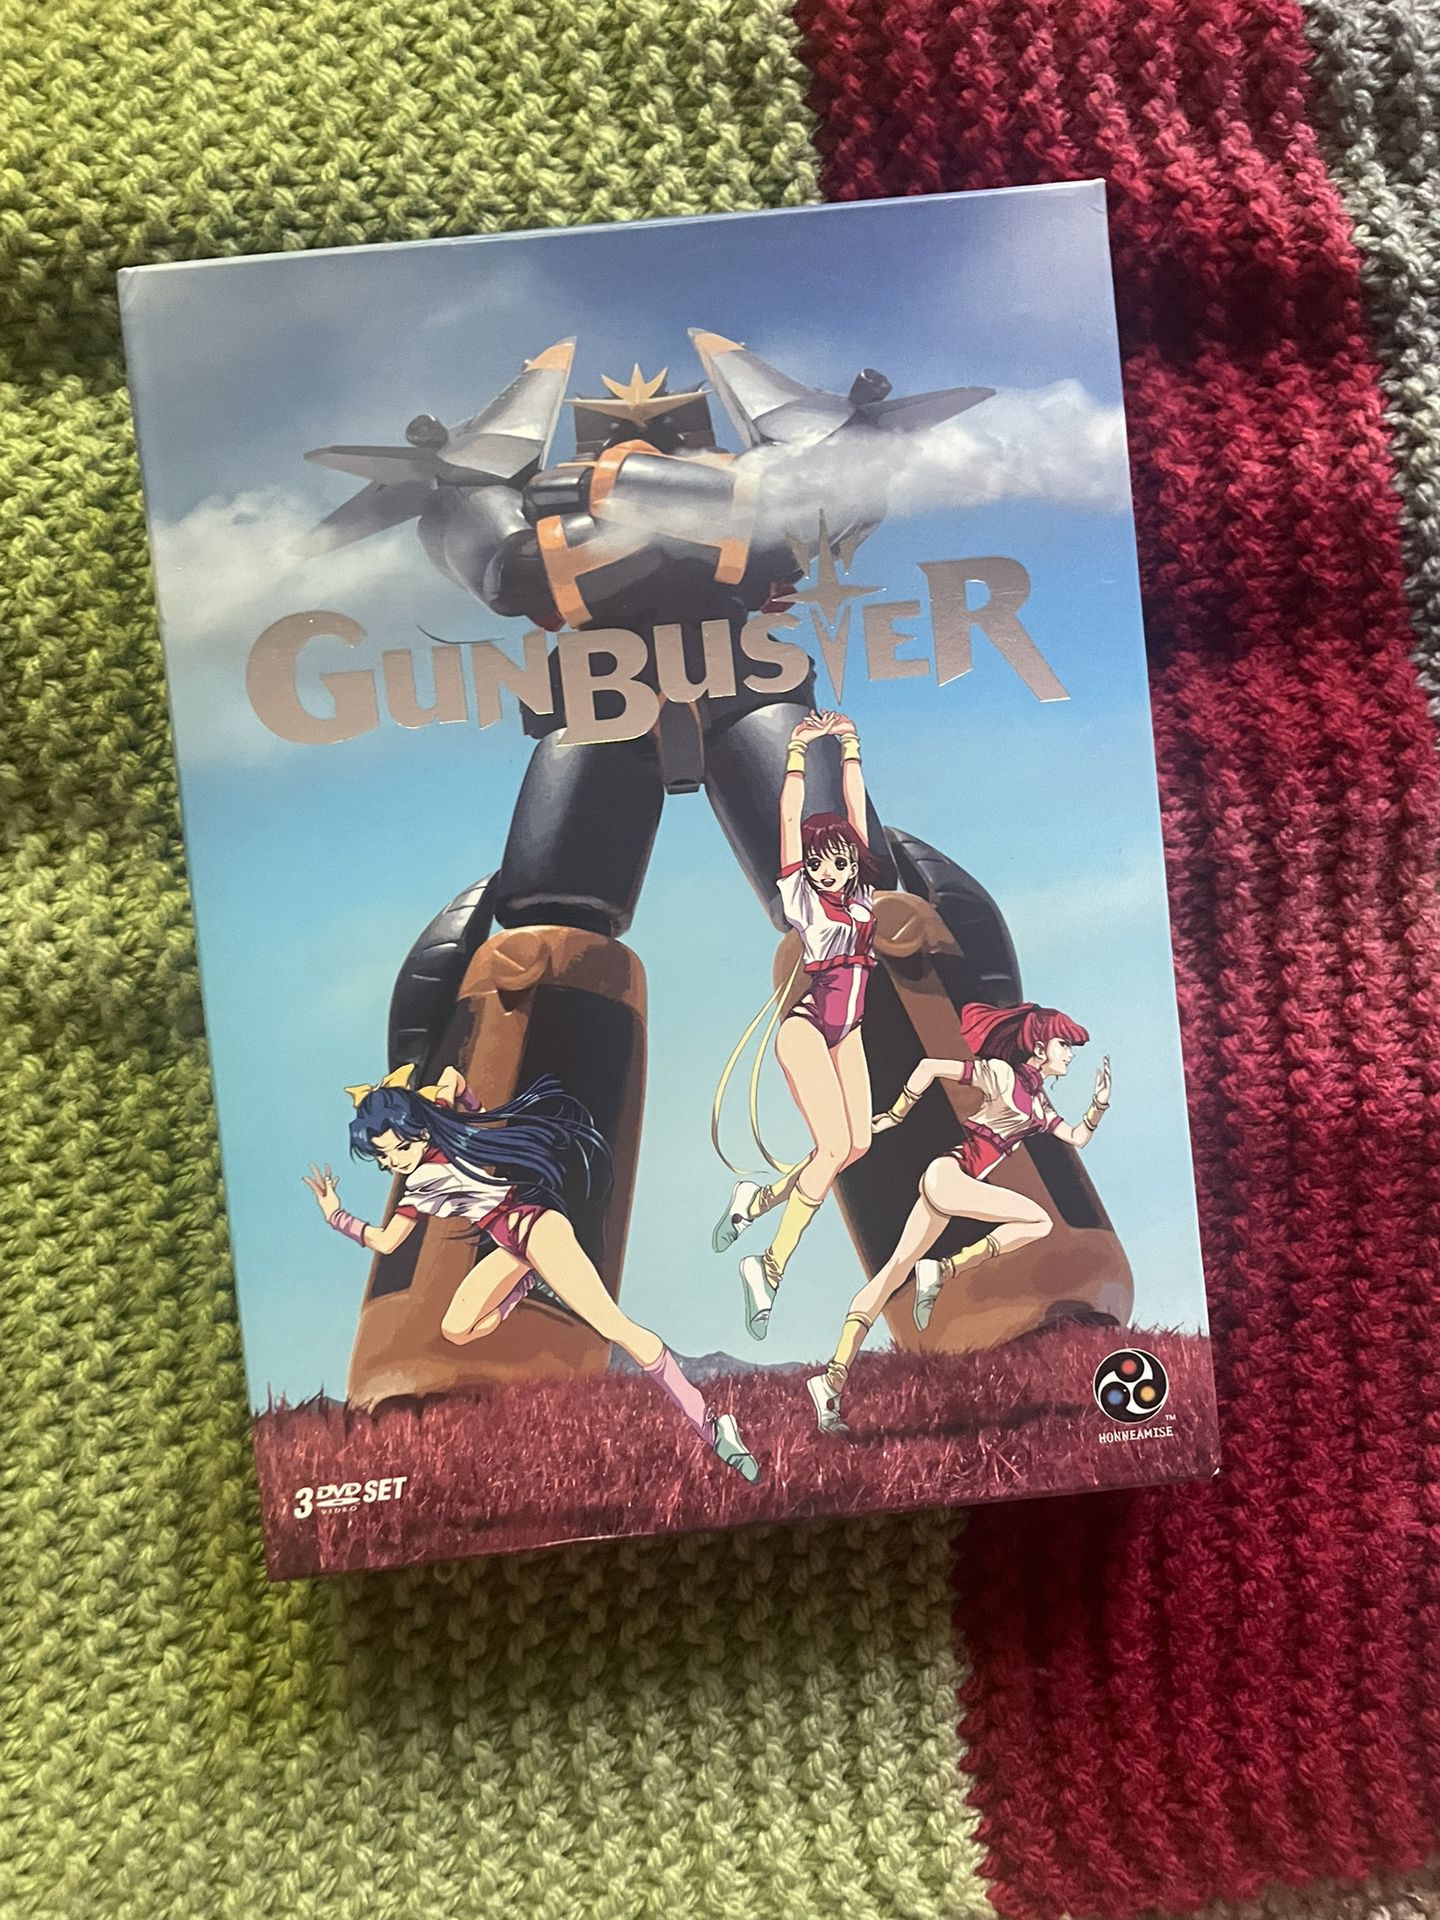 Gunbuster 3 DVD Set *Excellent Condition*